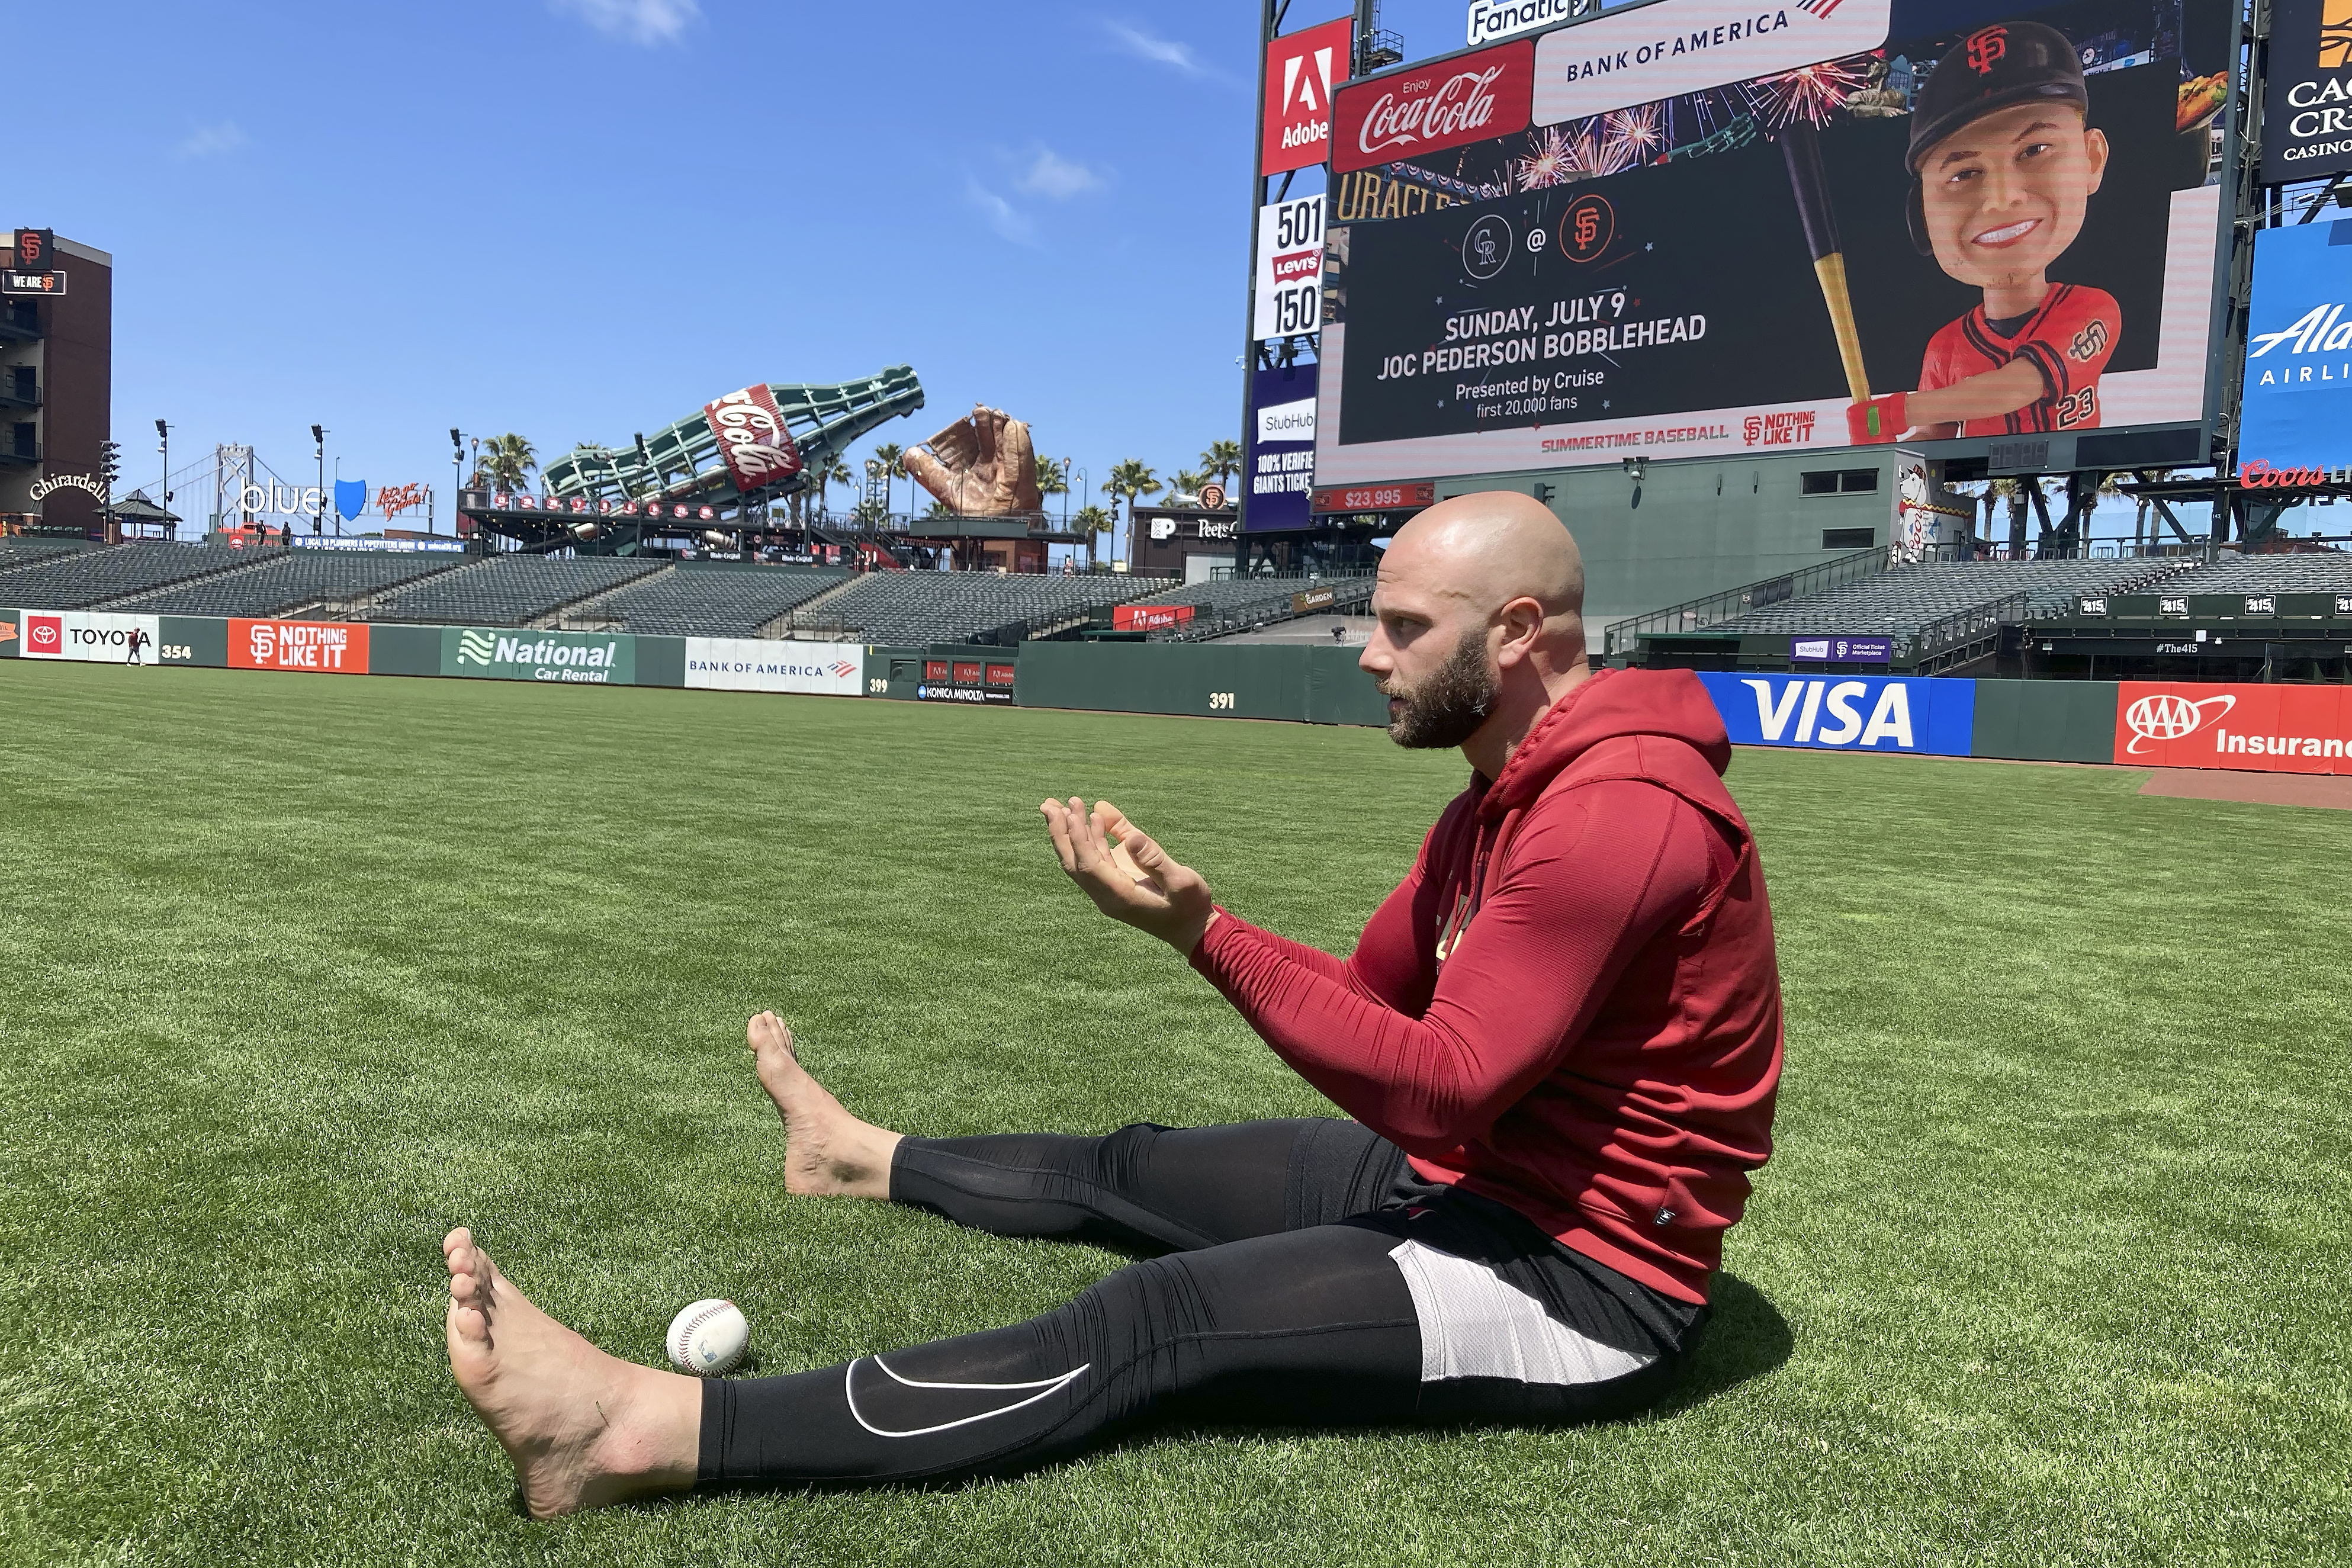 How barefoot walks, mindfulness made Giants' Joc Pederson an All